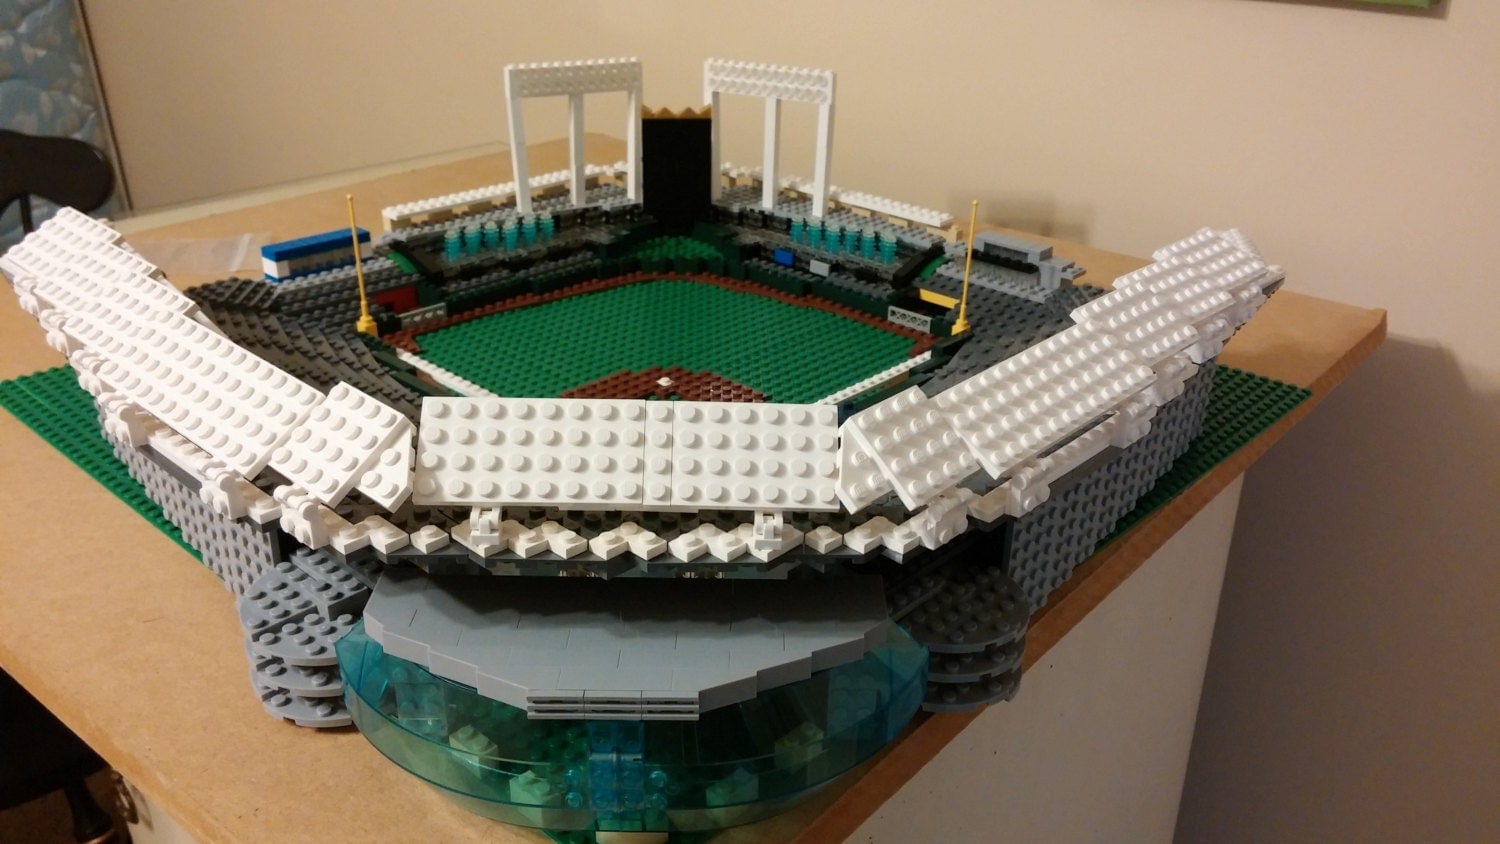 Lego baseball stadium instructions